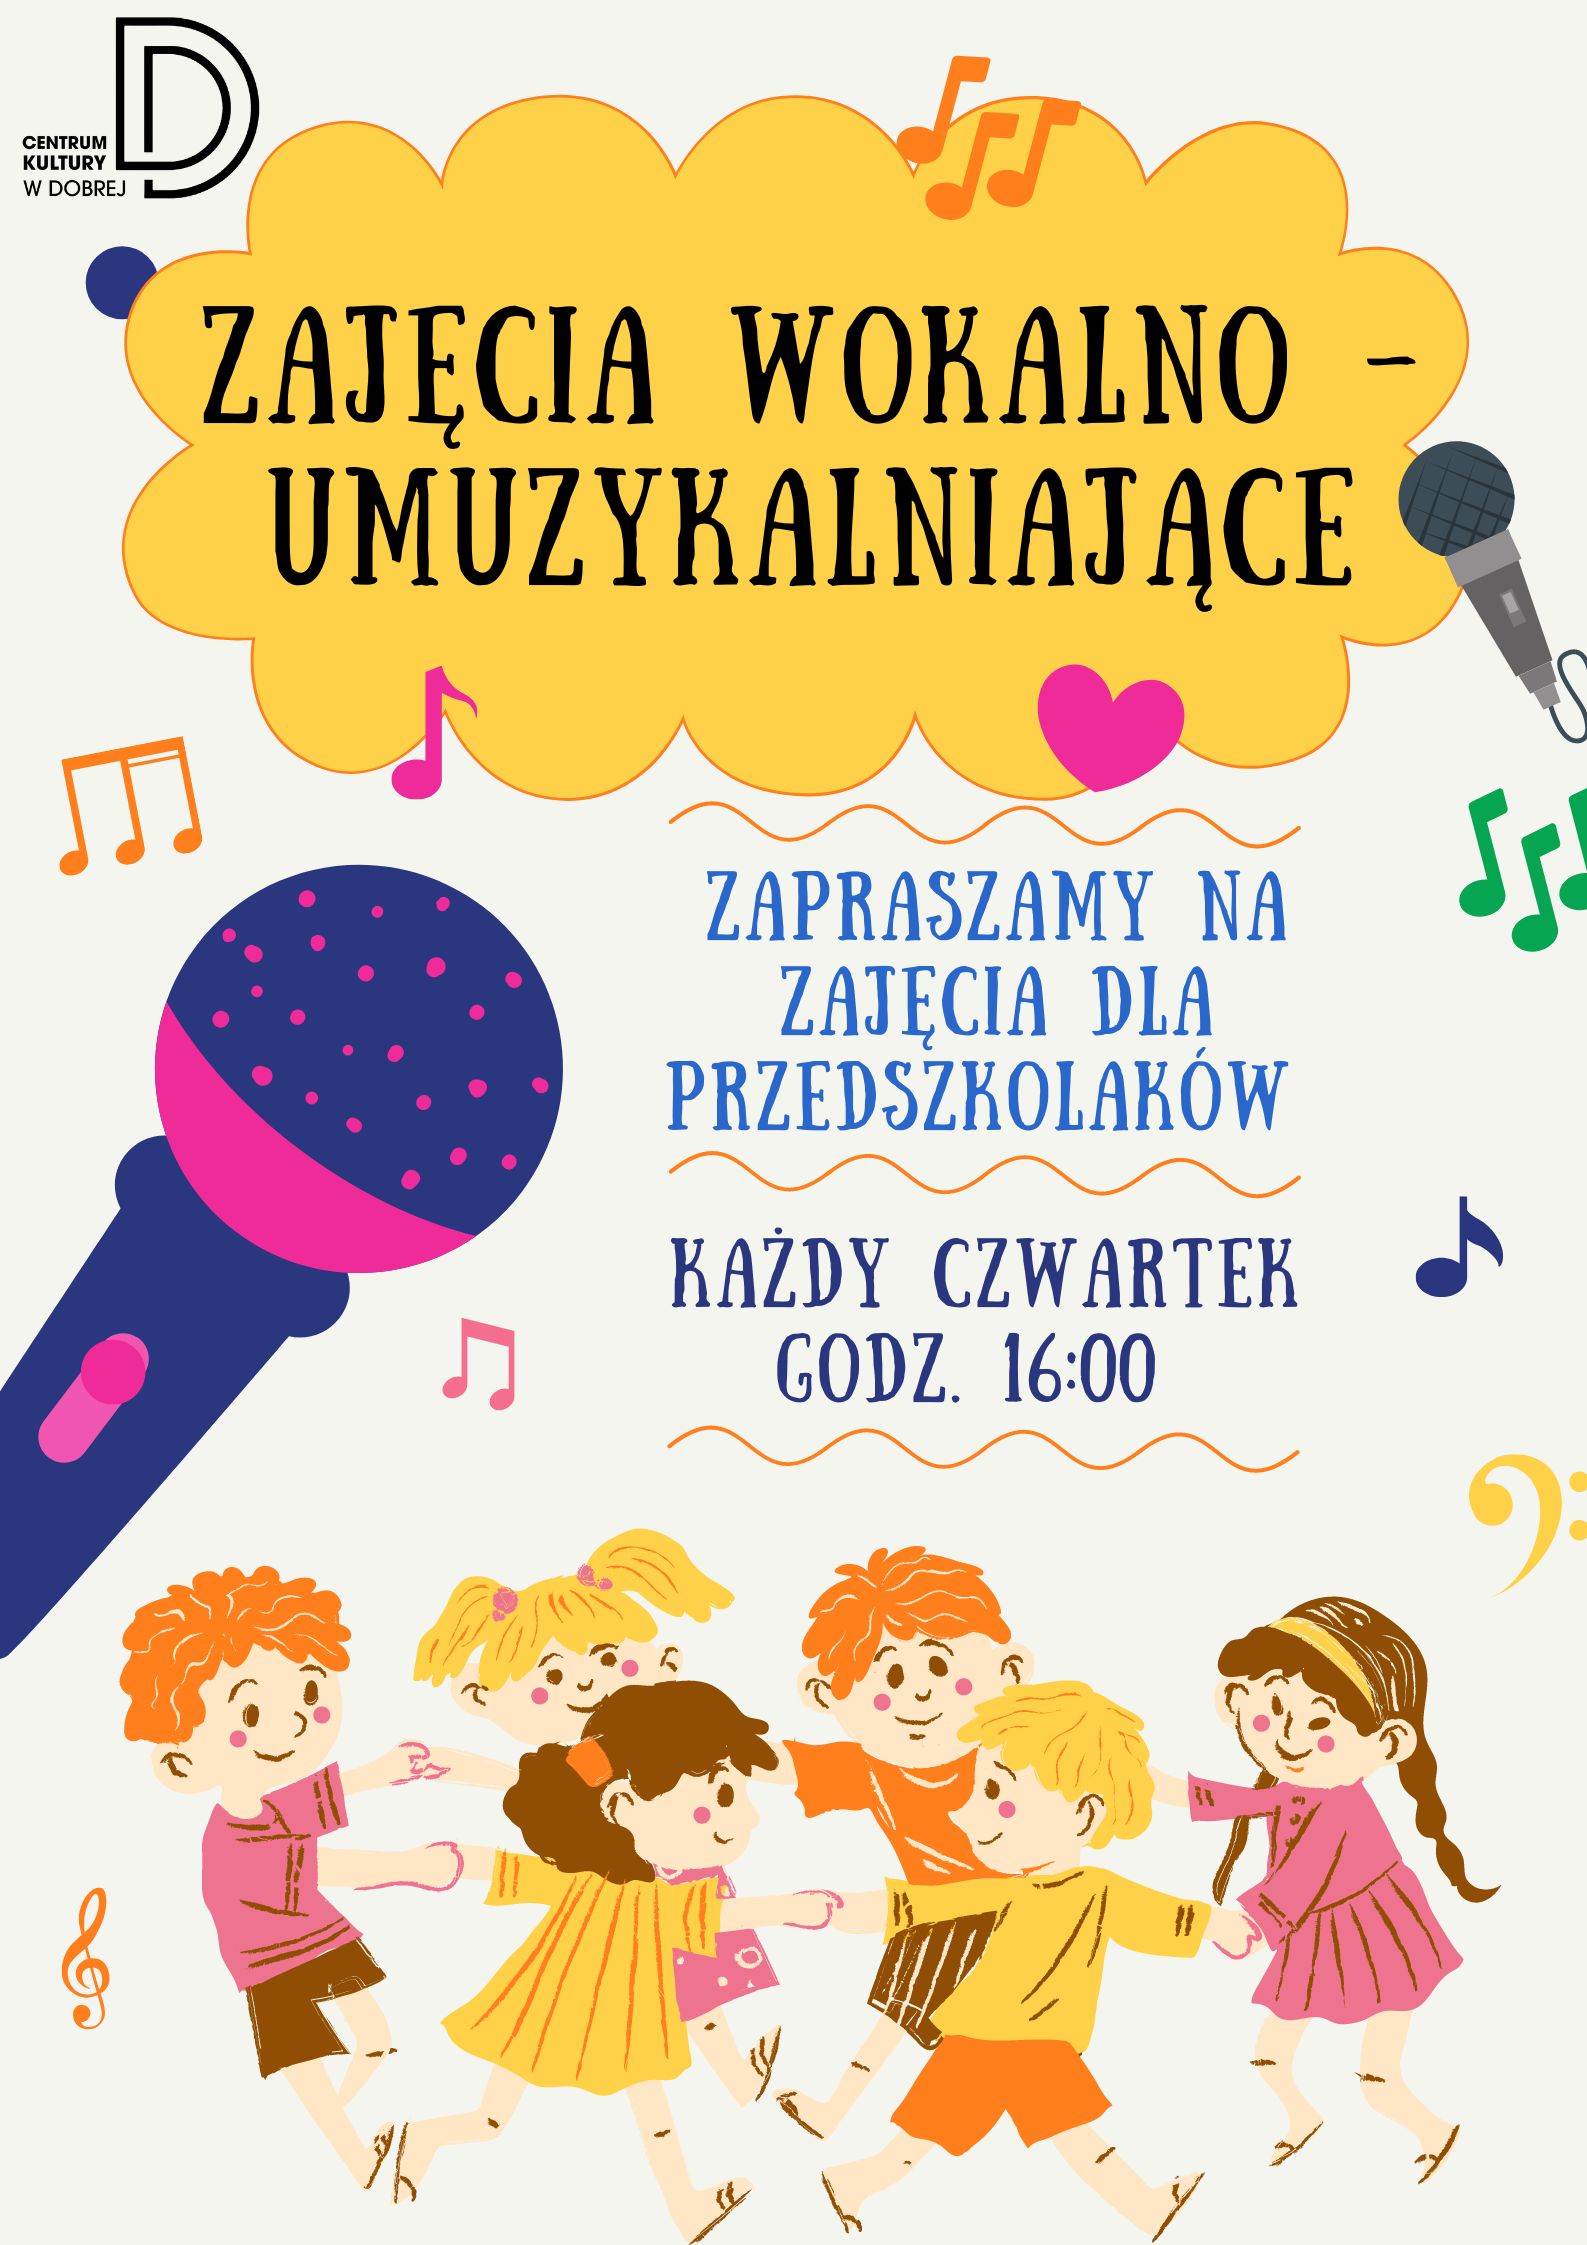 You are currently viewing Zajęcia wokalno-umuzykalniające